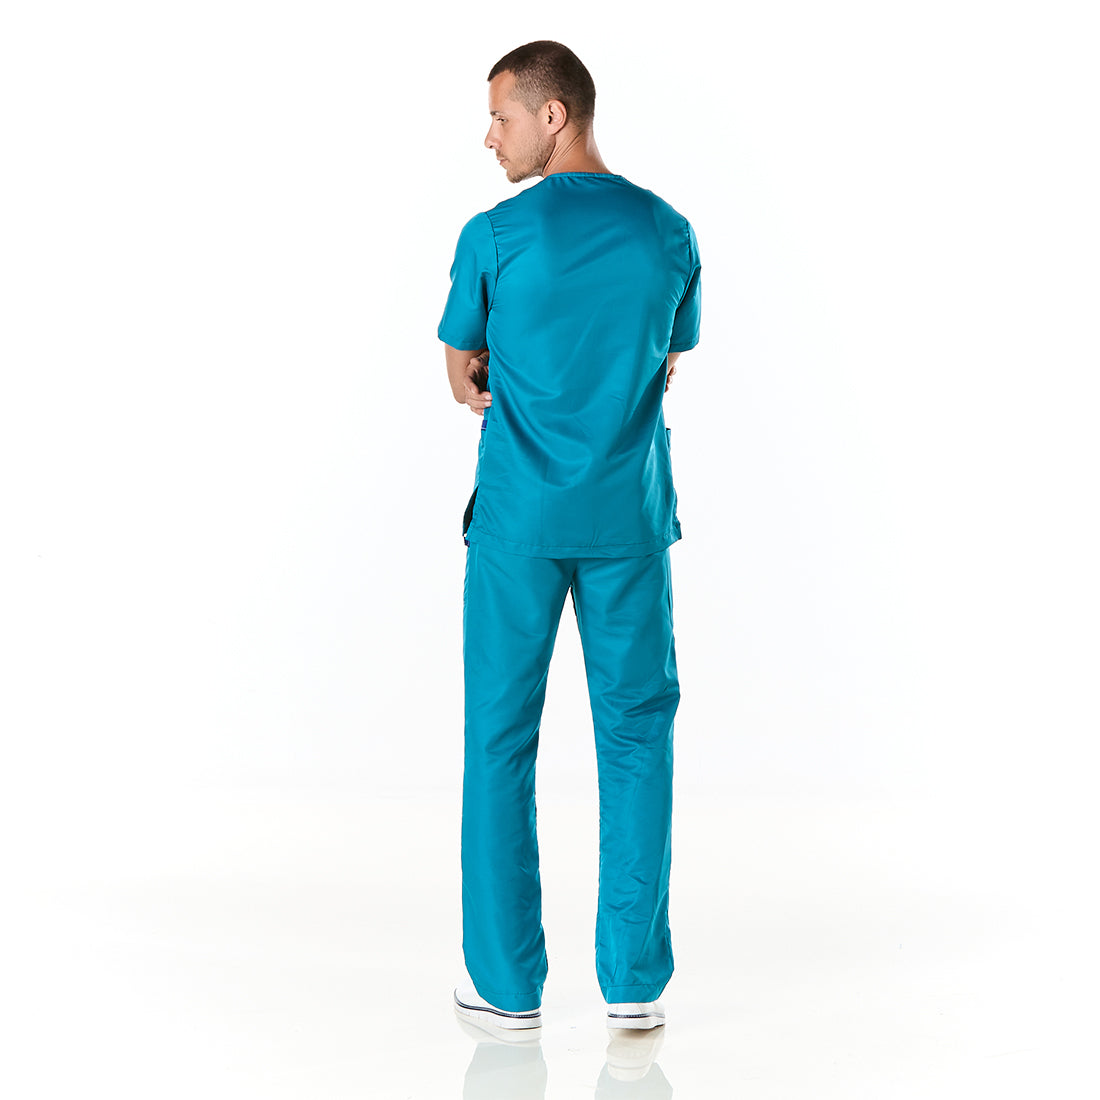 Hombre vistiendo pijama sanitario color azul turquesa con cuello en v y pantalon recto - espalda